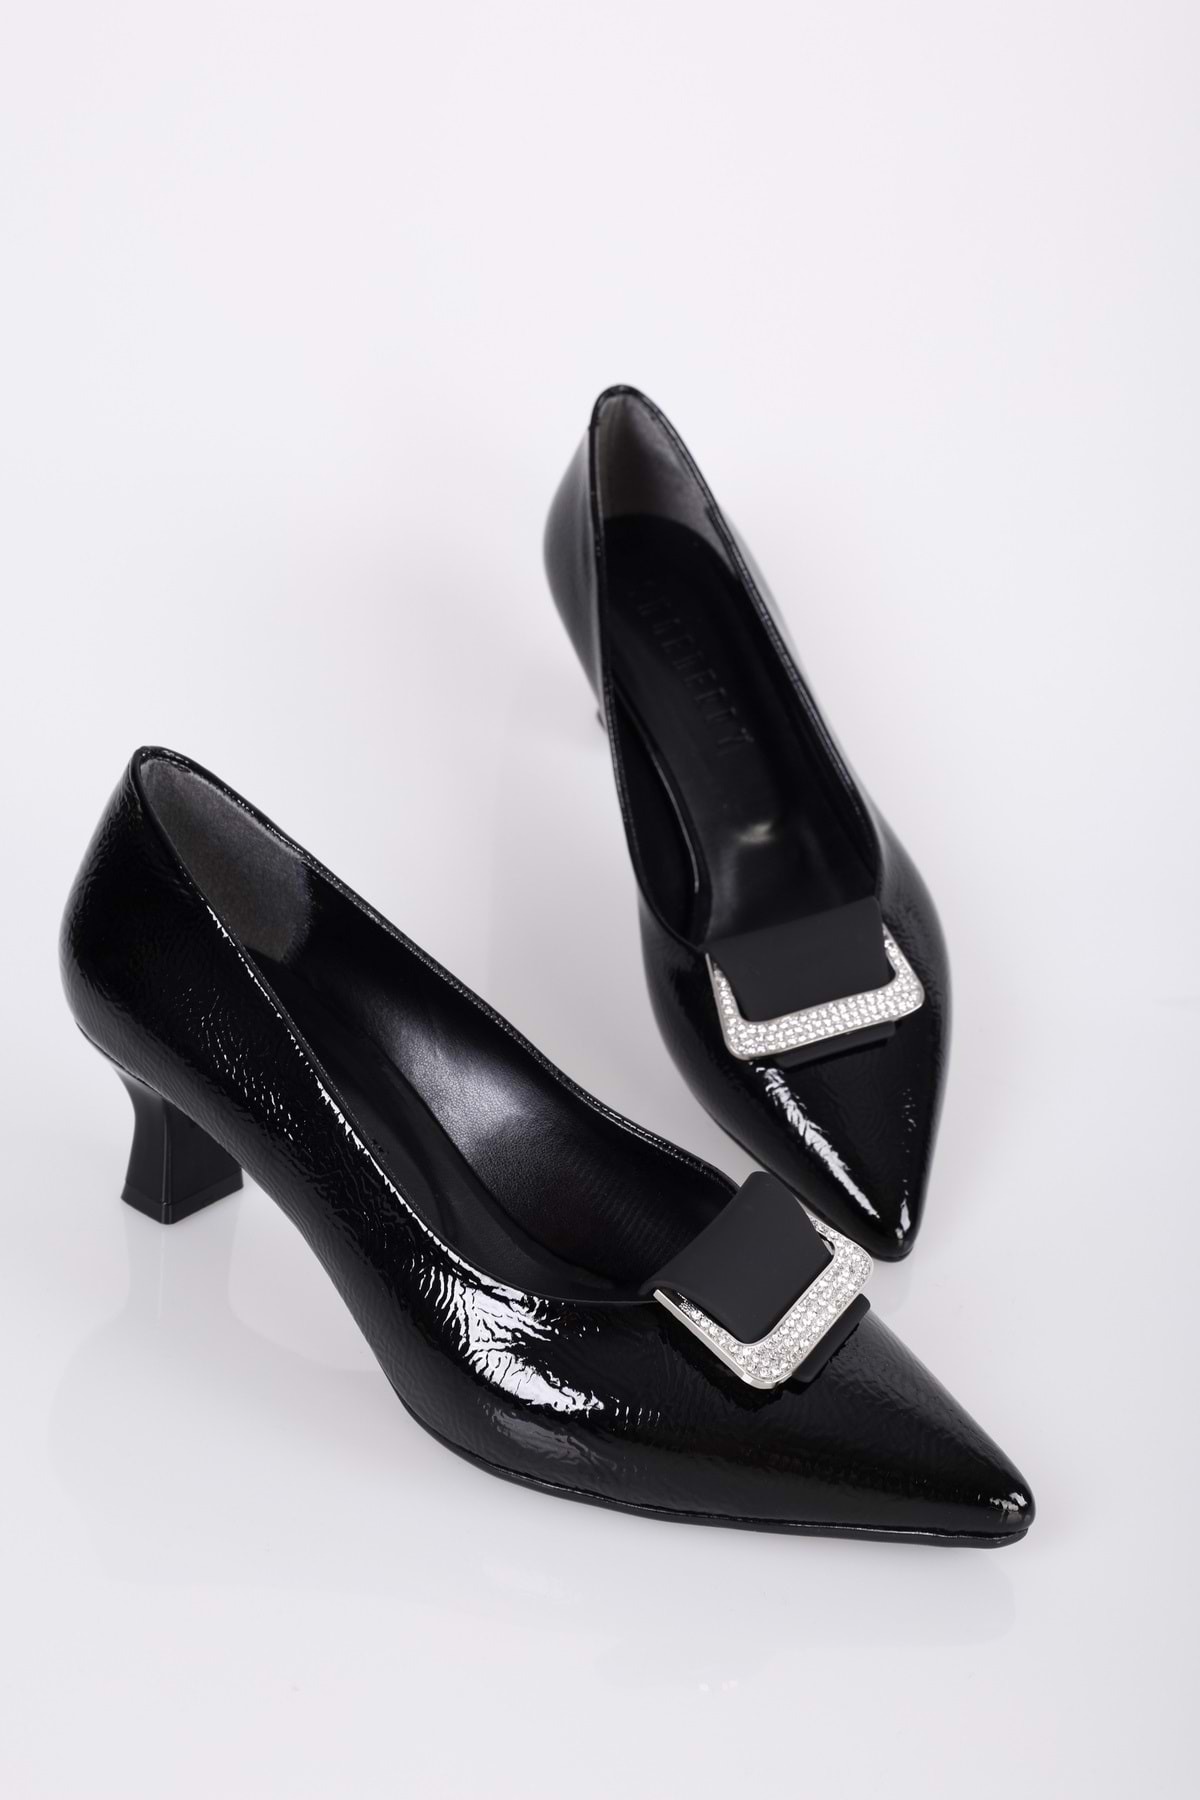 Levně Shoeberry Women's Savoir Black Patent Leather Heeled Shoes Stiletto